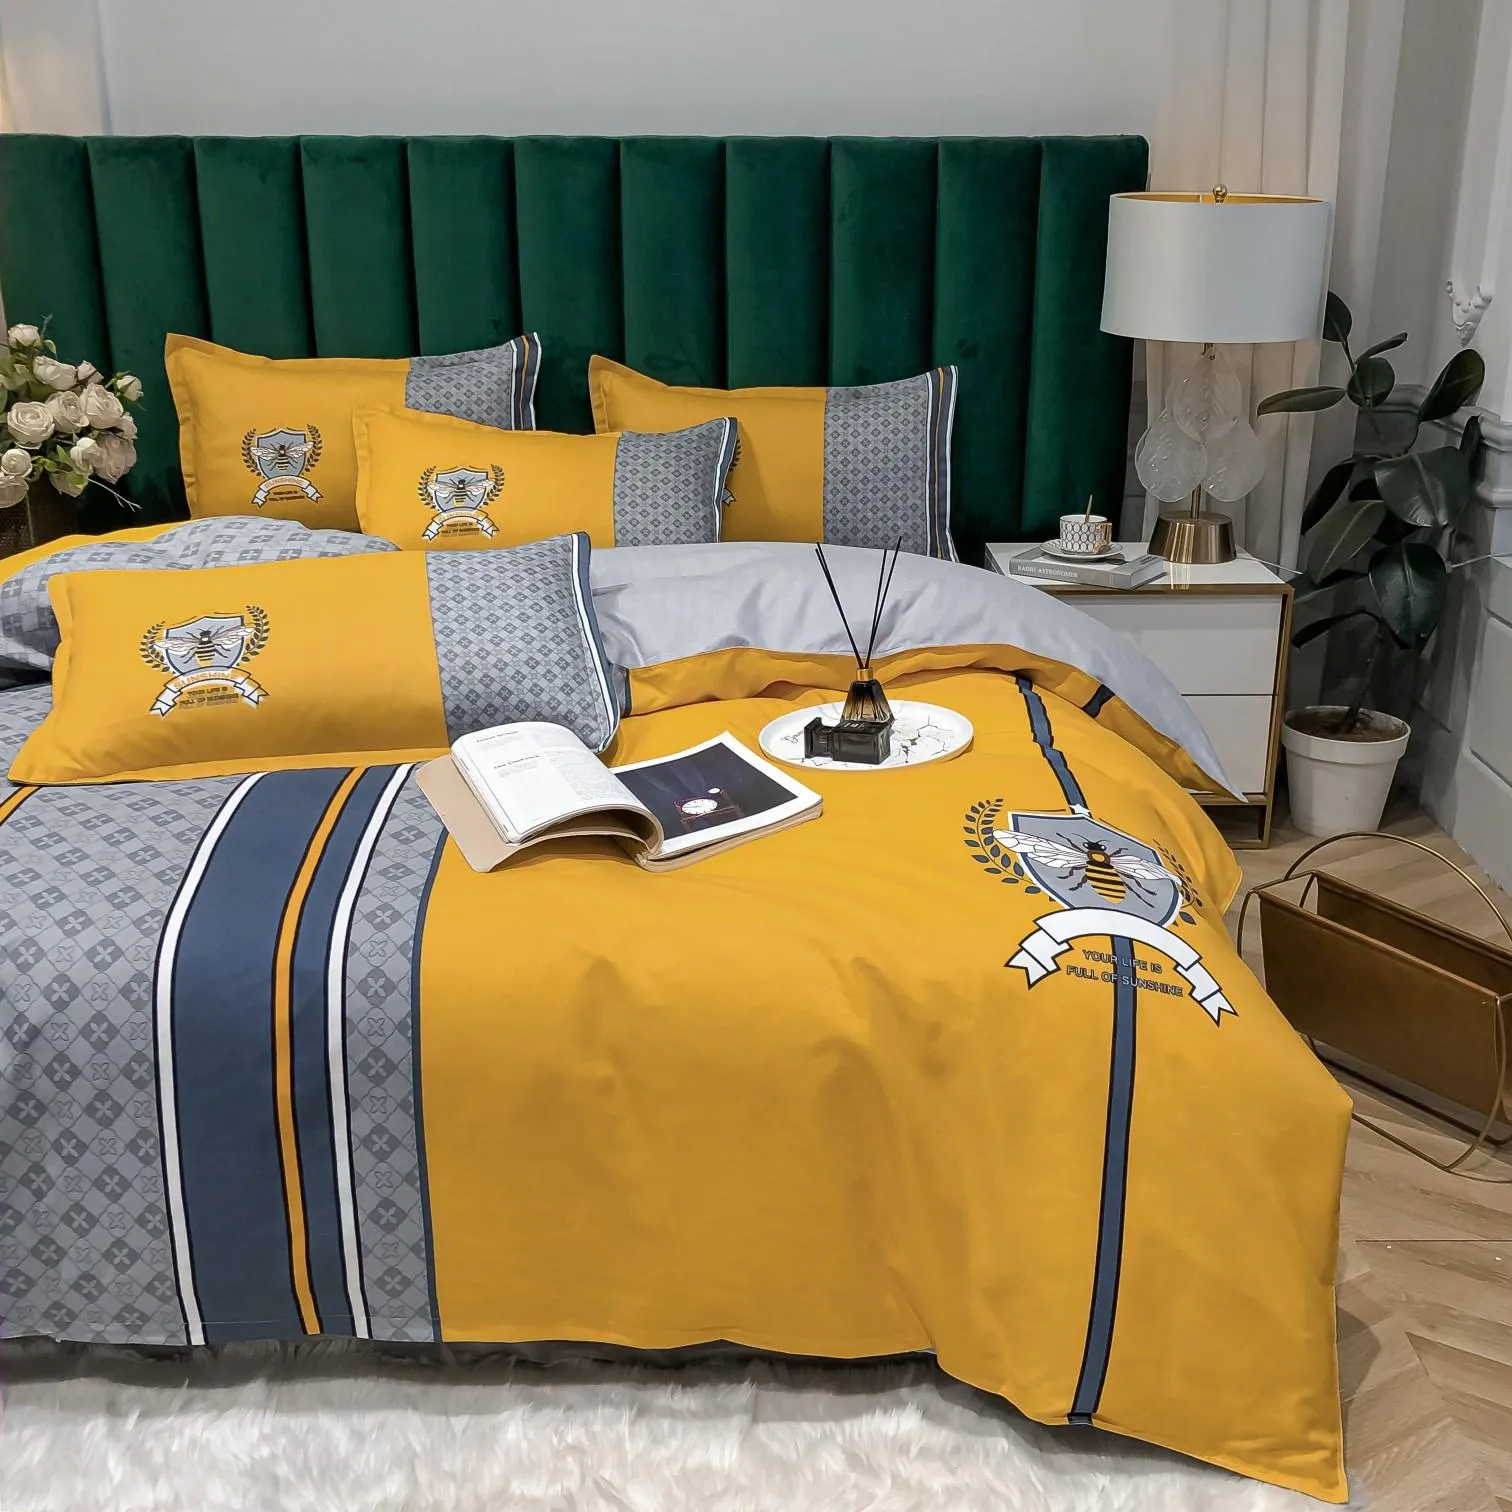 Conjuntos de ropa de cama de diseñador modernos Cover Fashion de alta calidad Algodón Queen Tamaño de la cama Xury Breest Controladores3927837